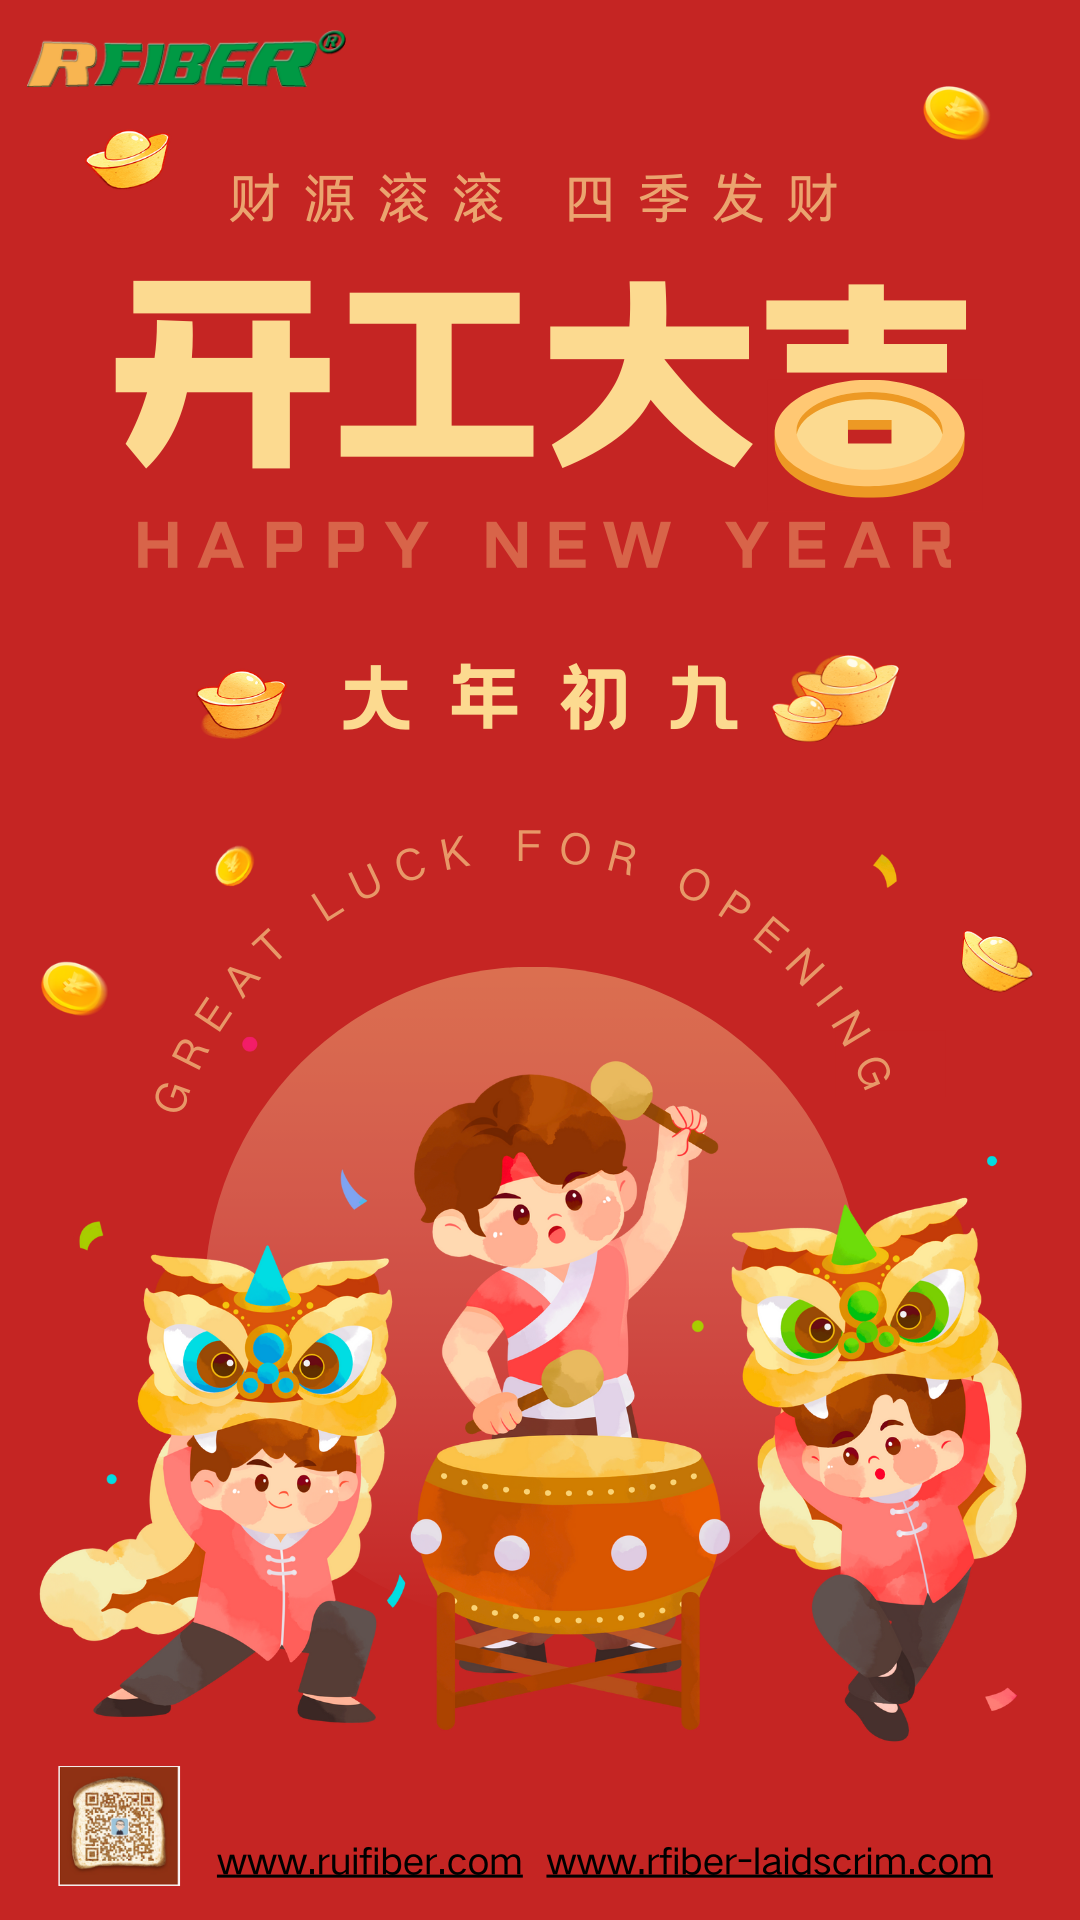 Shanghai Ruifiber nastavlja s radom nakon proslave kineske Nove godine